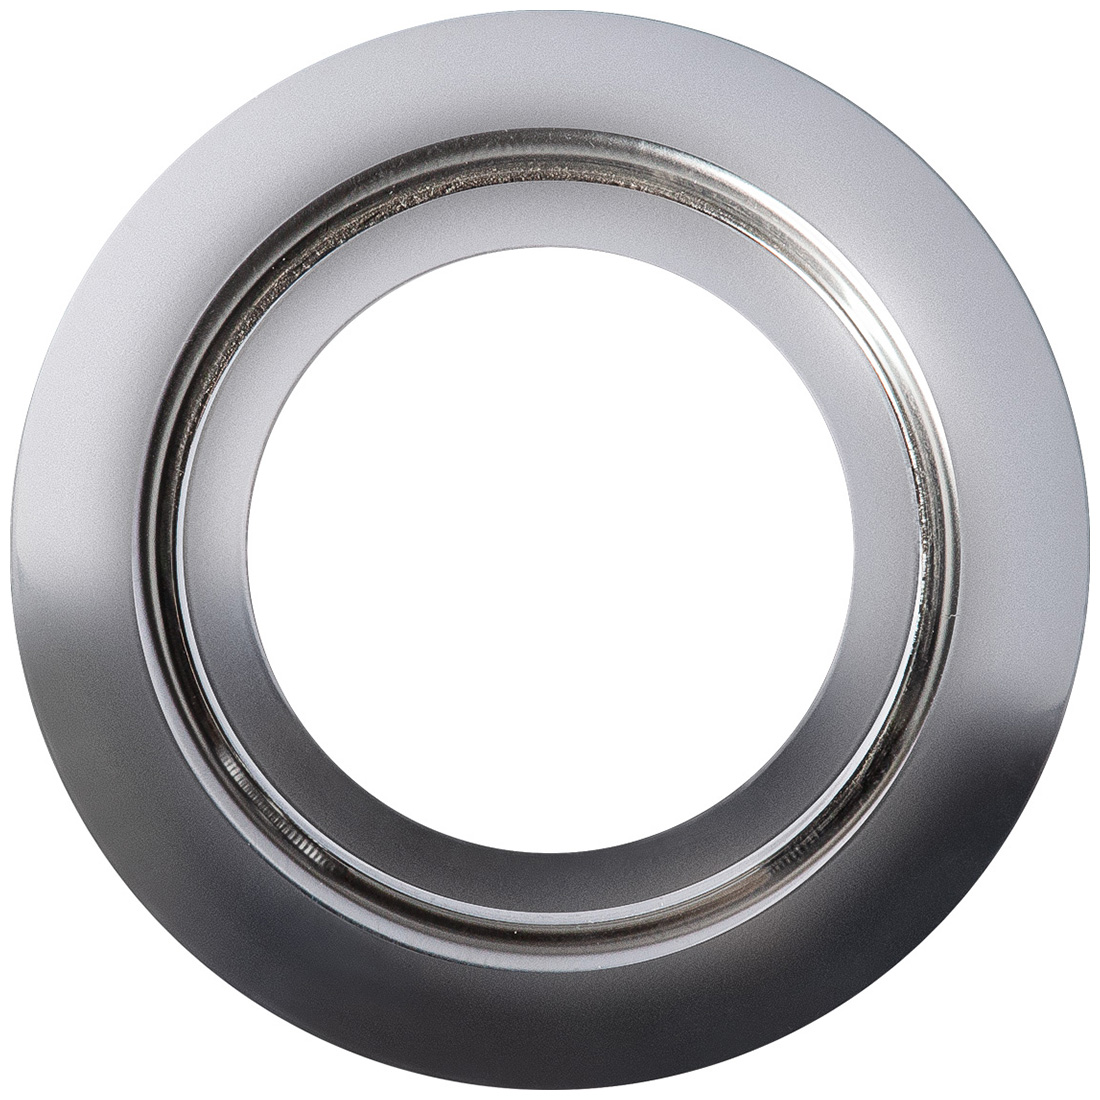 Кольцо переходник для измельчителя Bort Ring 160, 93412642 кольцо переходник для измельчителя bort ring 160 для кухонных моек 160 мм